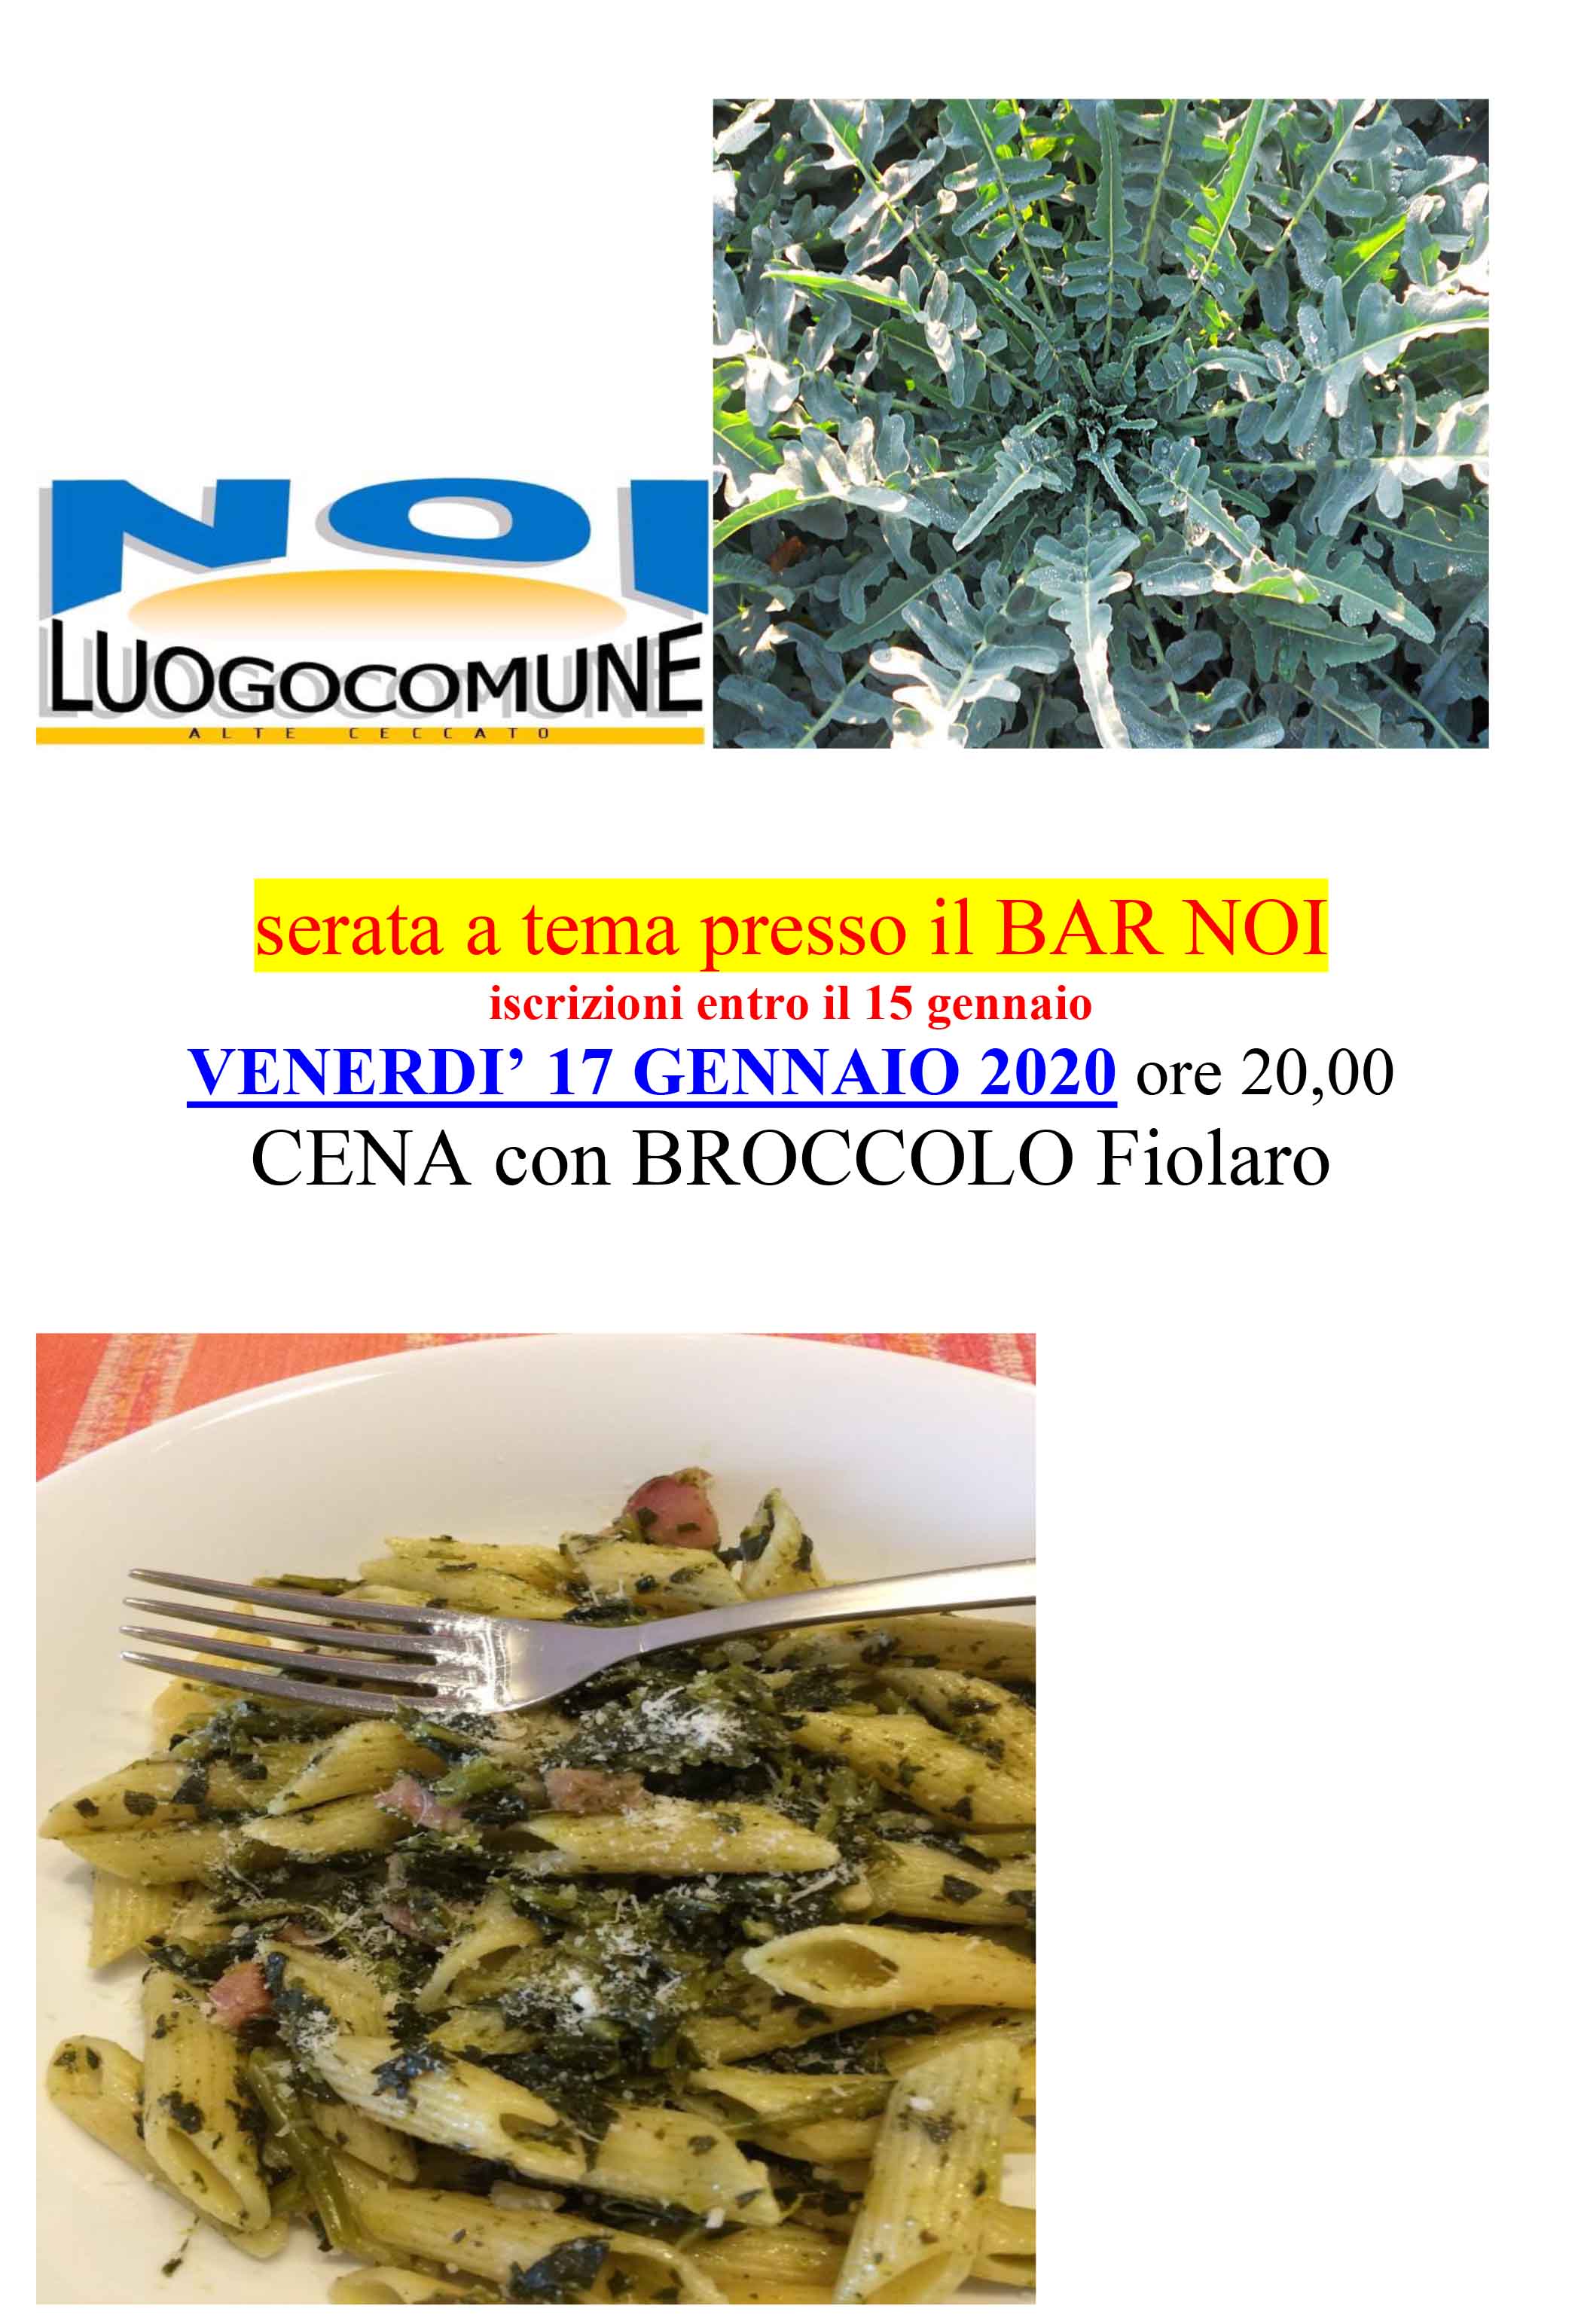 Serata con Broccolo fiolaro